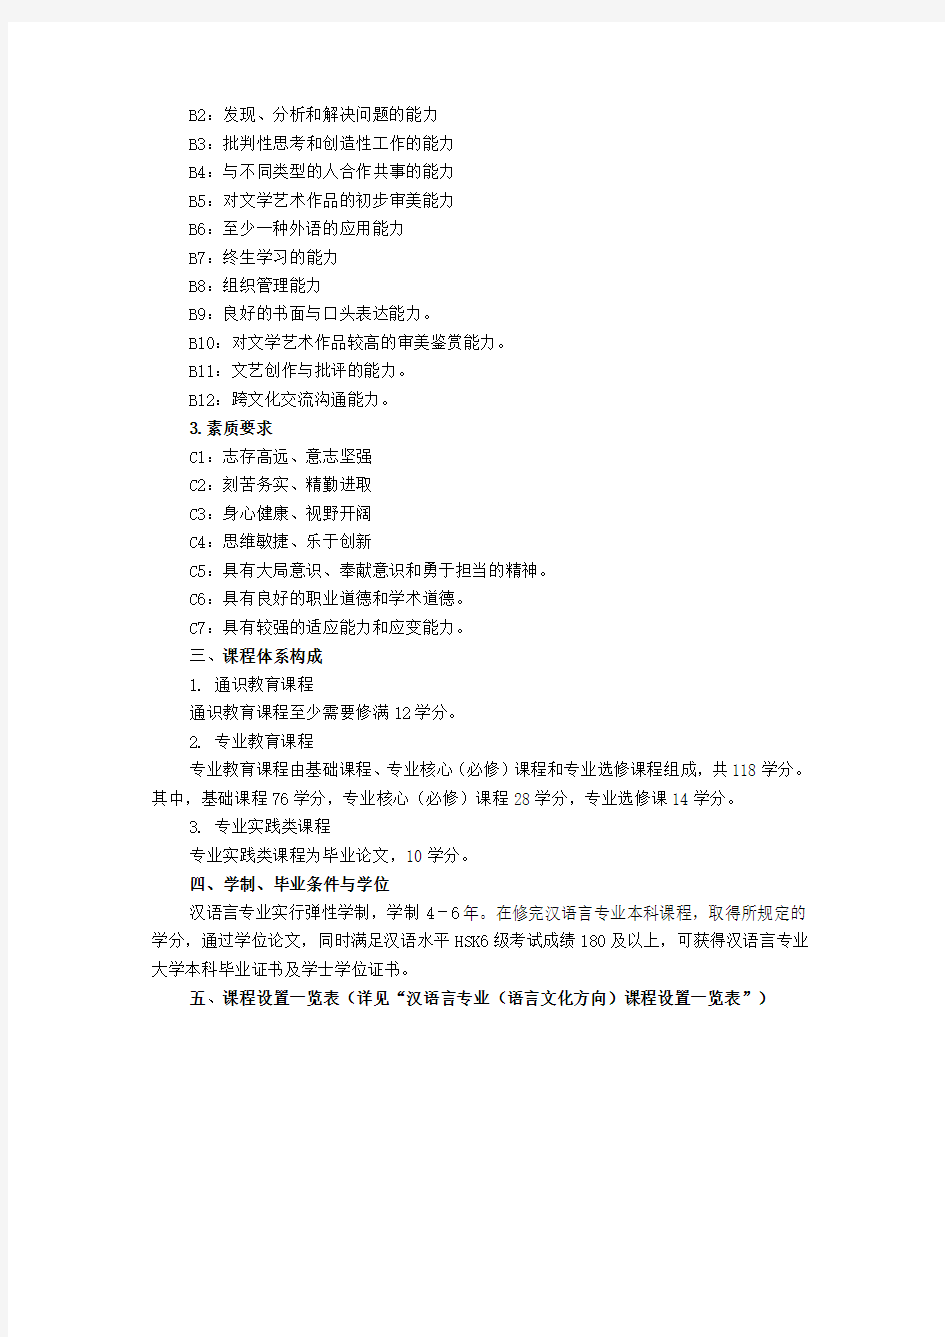 汉语言专业(语言文化方向)培养方案(2016年修订版)